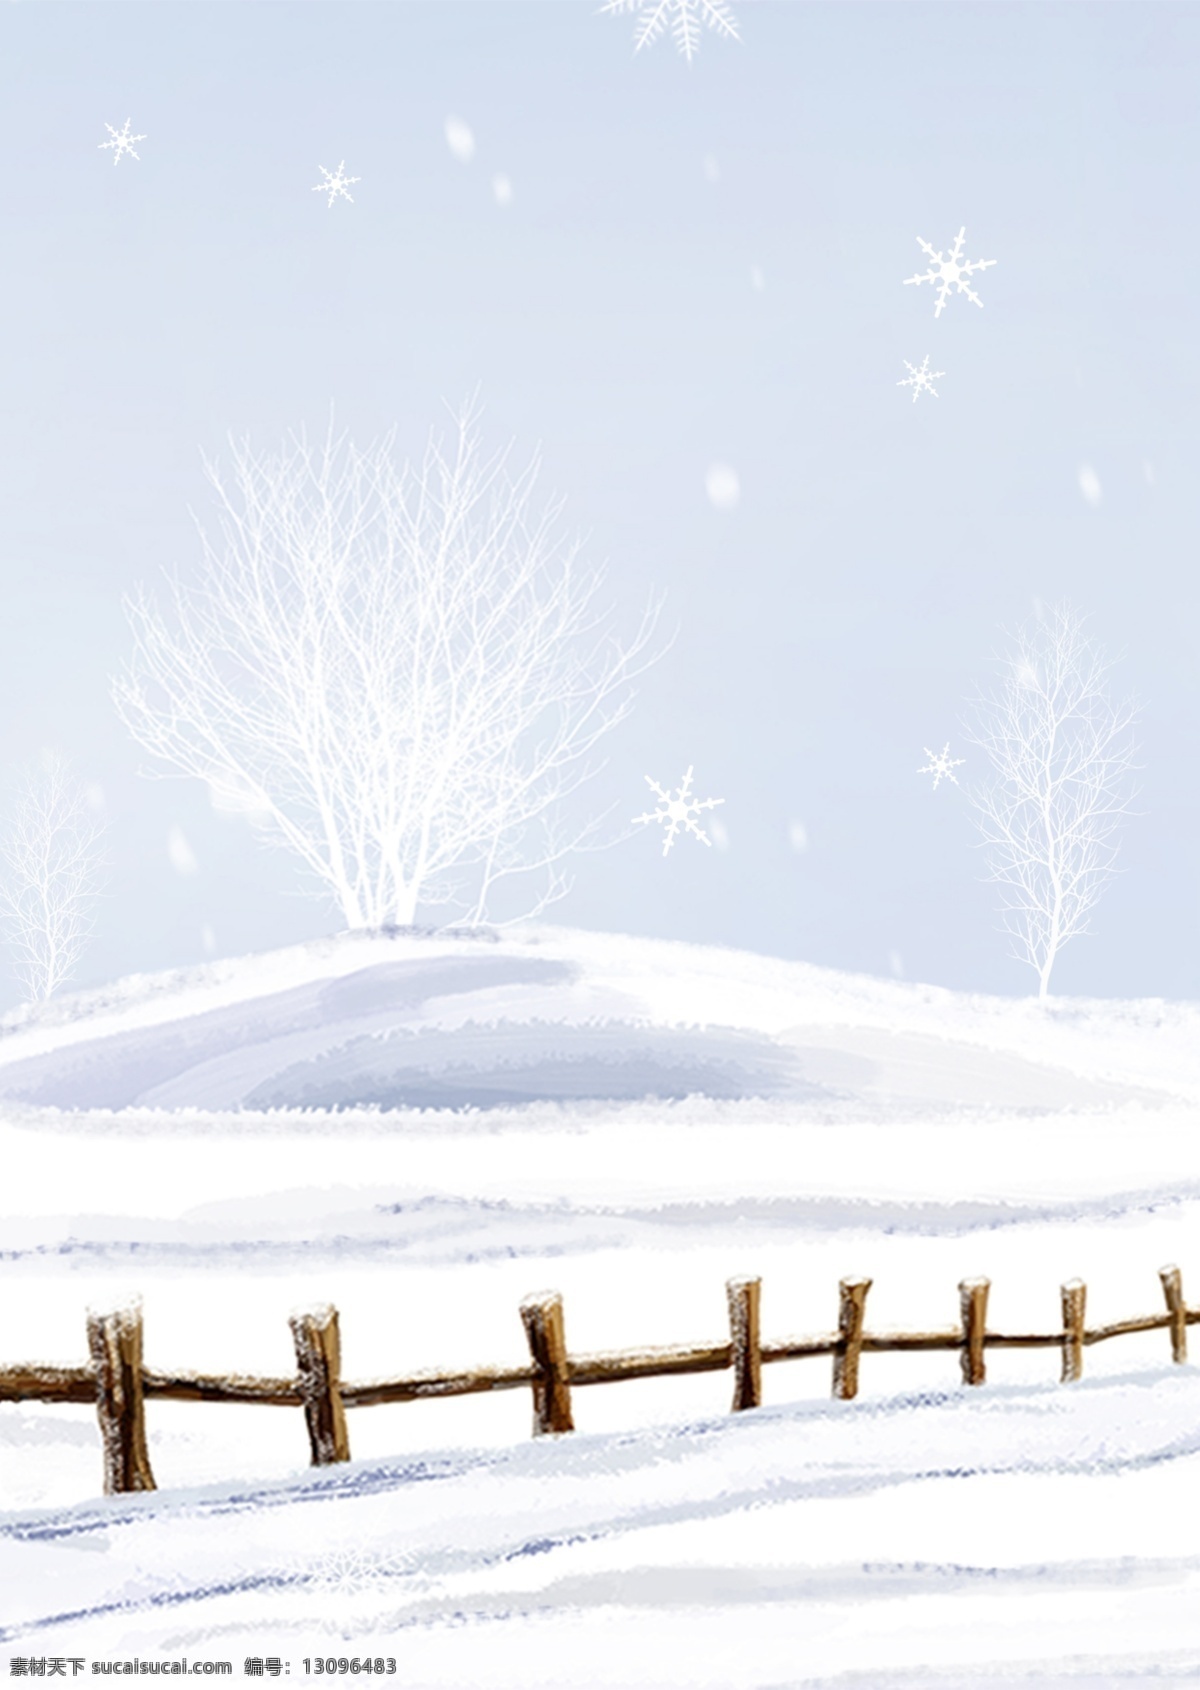 彩绘 十二月 雪地 背景 冬季 冬天 背景图 创意 栅栏 冬天背景 大雪节气 彩绘背景 通用背景 促销背景 背景展板图